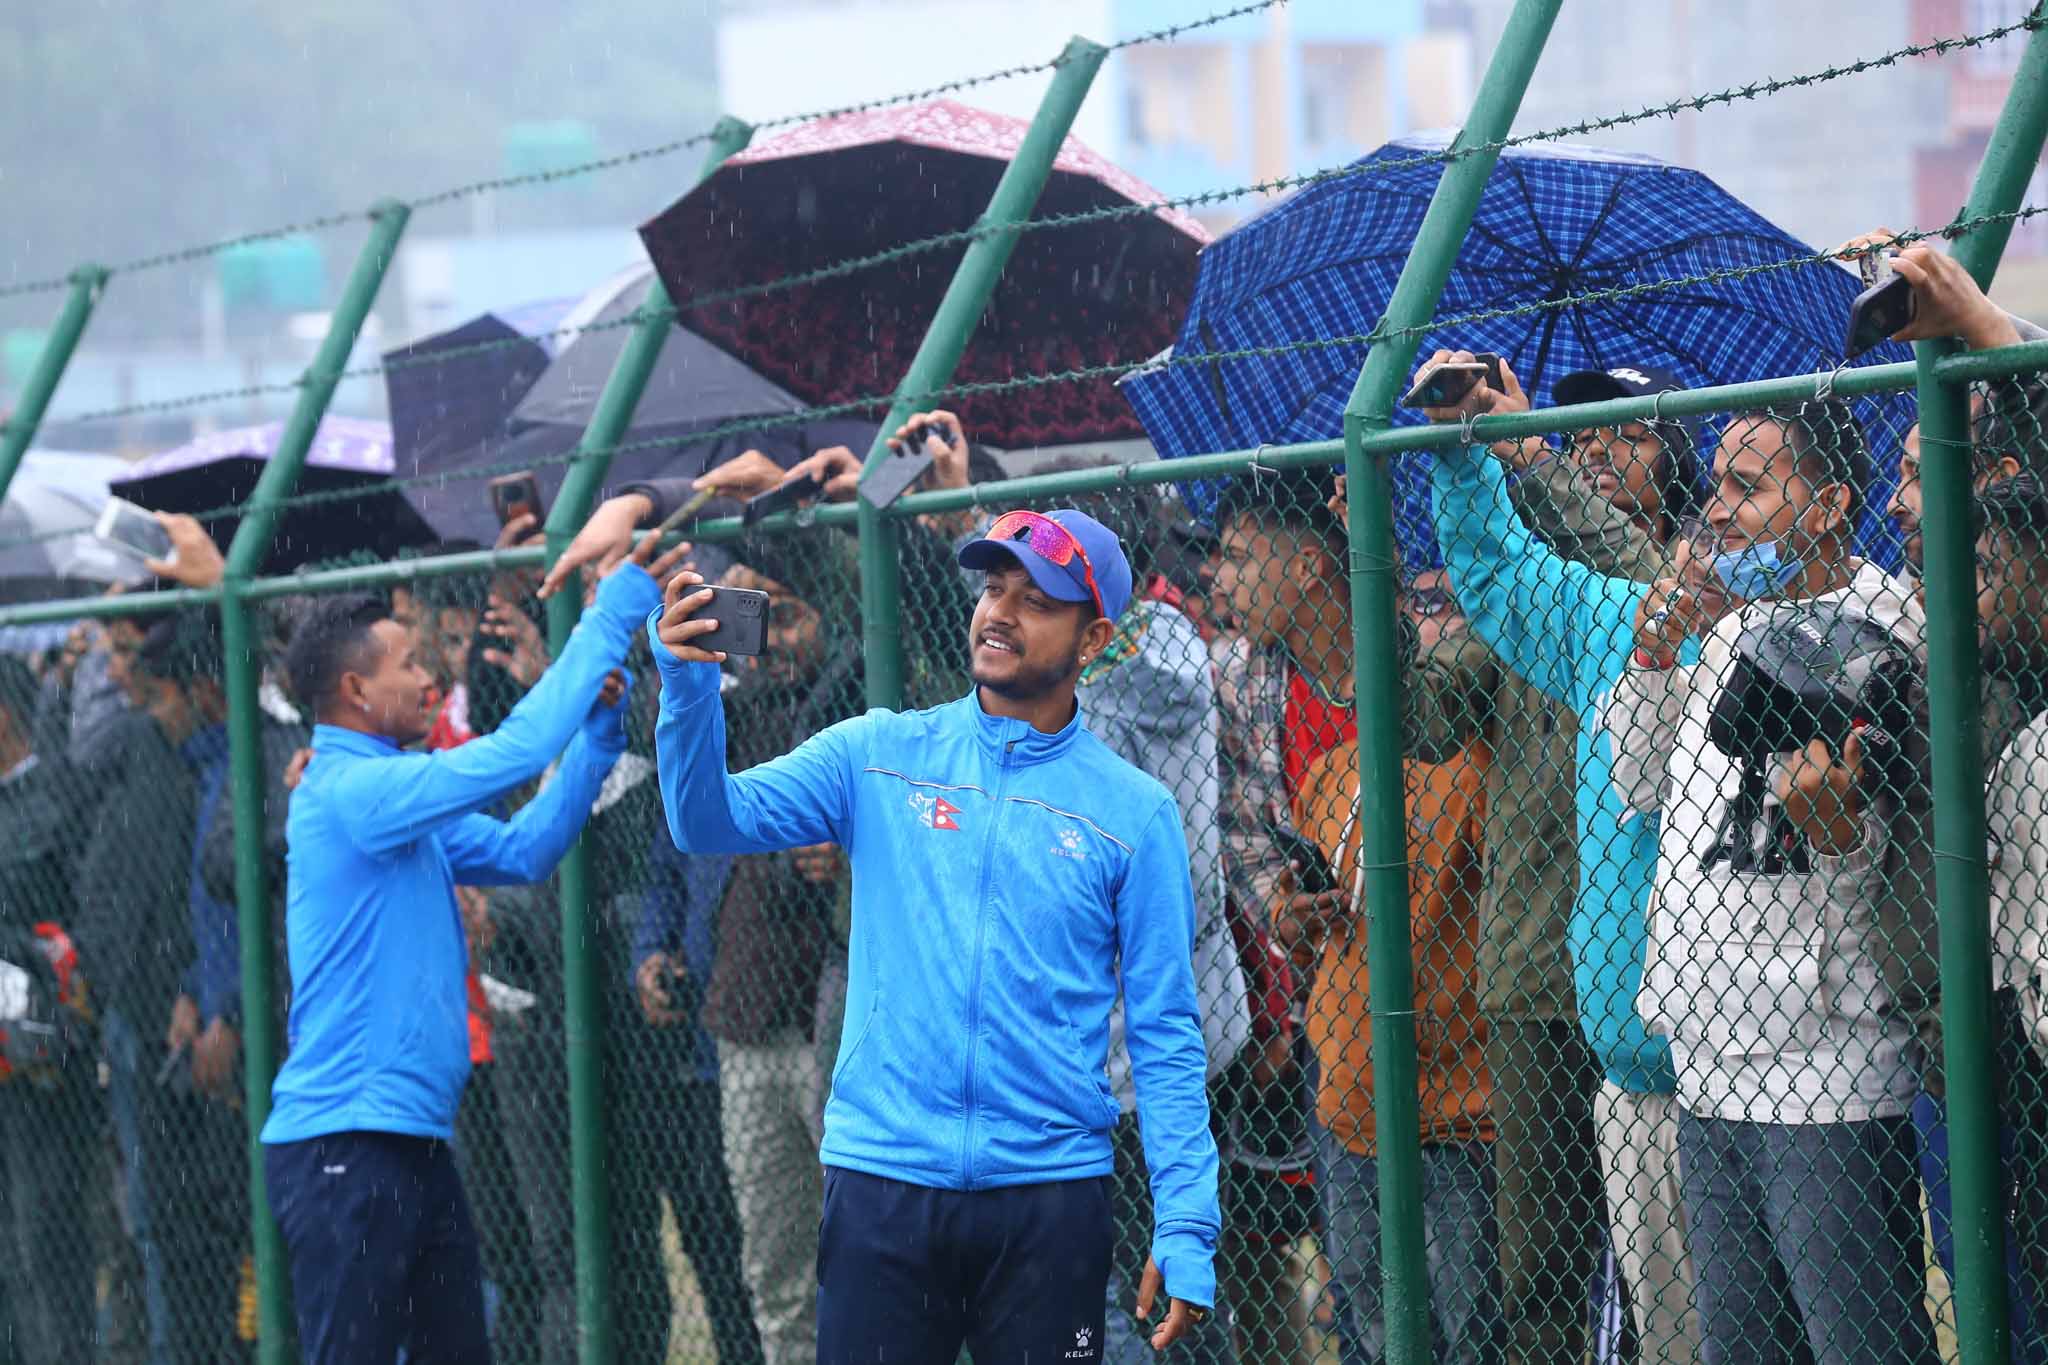 वर्षाका कारण खेल रद्ध भएपछि नेपाली खेलाडी क्रिकेट प्रेमीहरुसँग सेल्फी लिँदै